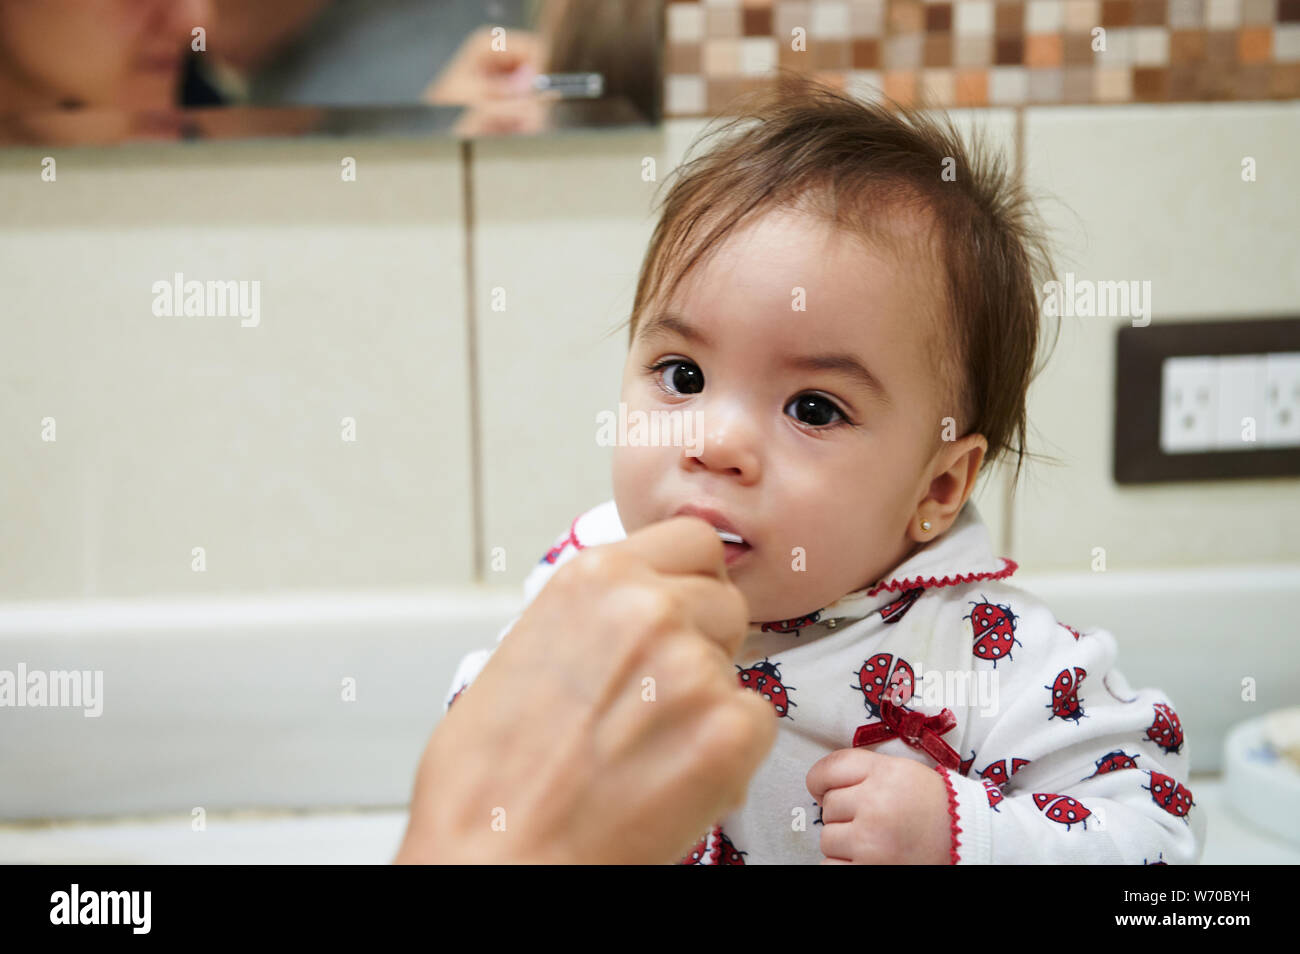 Première expérience de se brosser les dents. Portrait of baby girl brushing teeth Banque D'Images